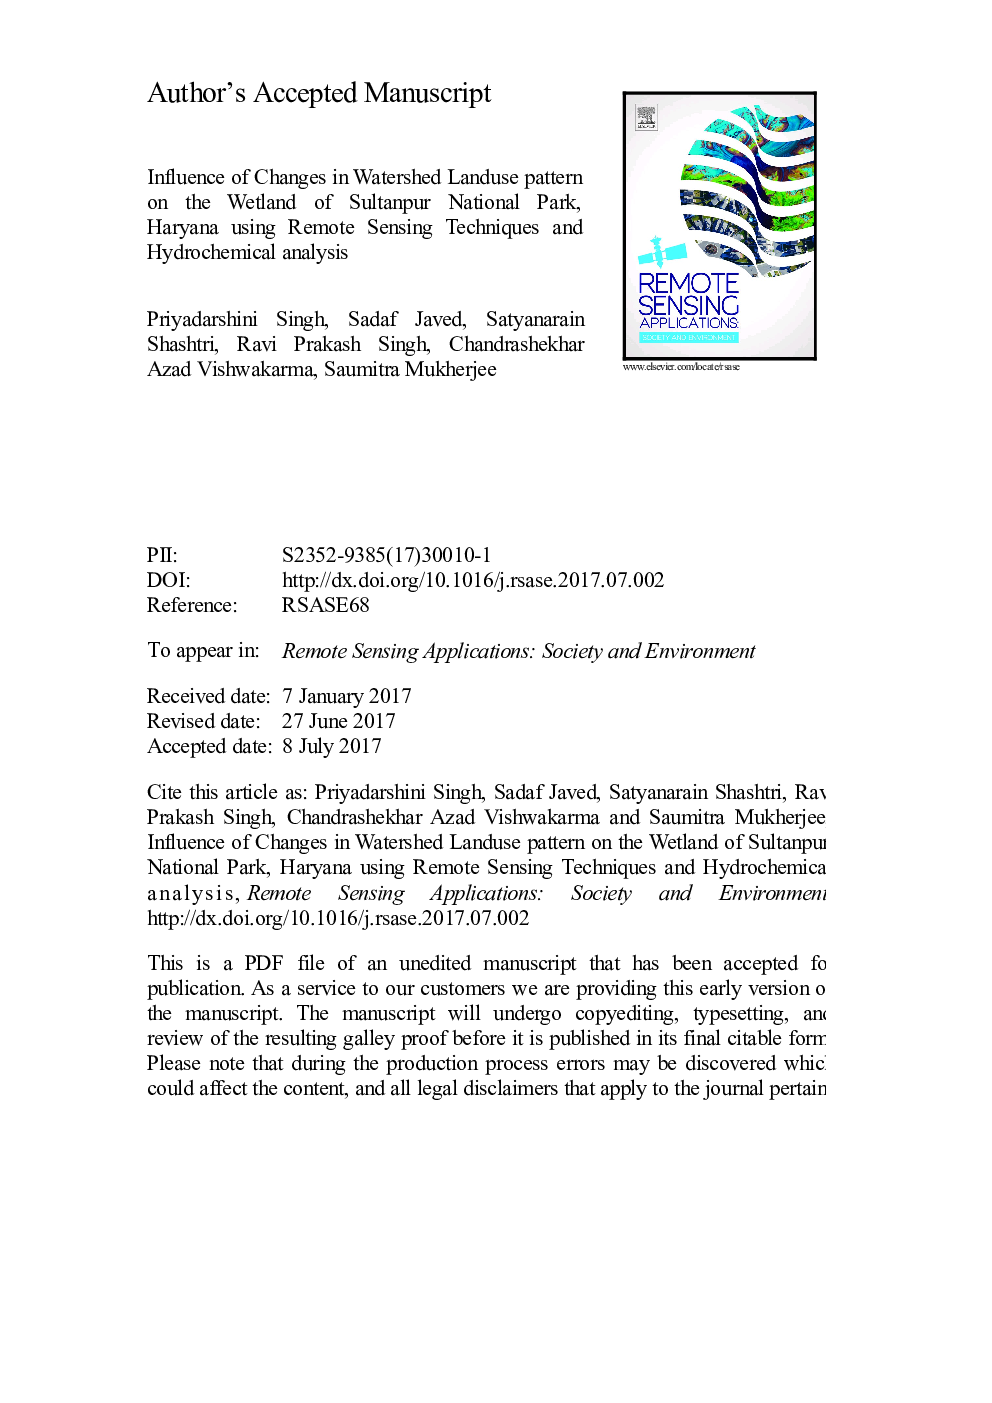 تأثیر تغییرات الگوی اراضی حوزه آبخیز بر روی تالاب پارک ملی سلطانپور، هاریانا با استفاده از تکنیکهای سنجش از دور و تجزیه و تحلیل هیدروکریمی 